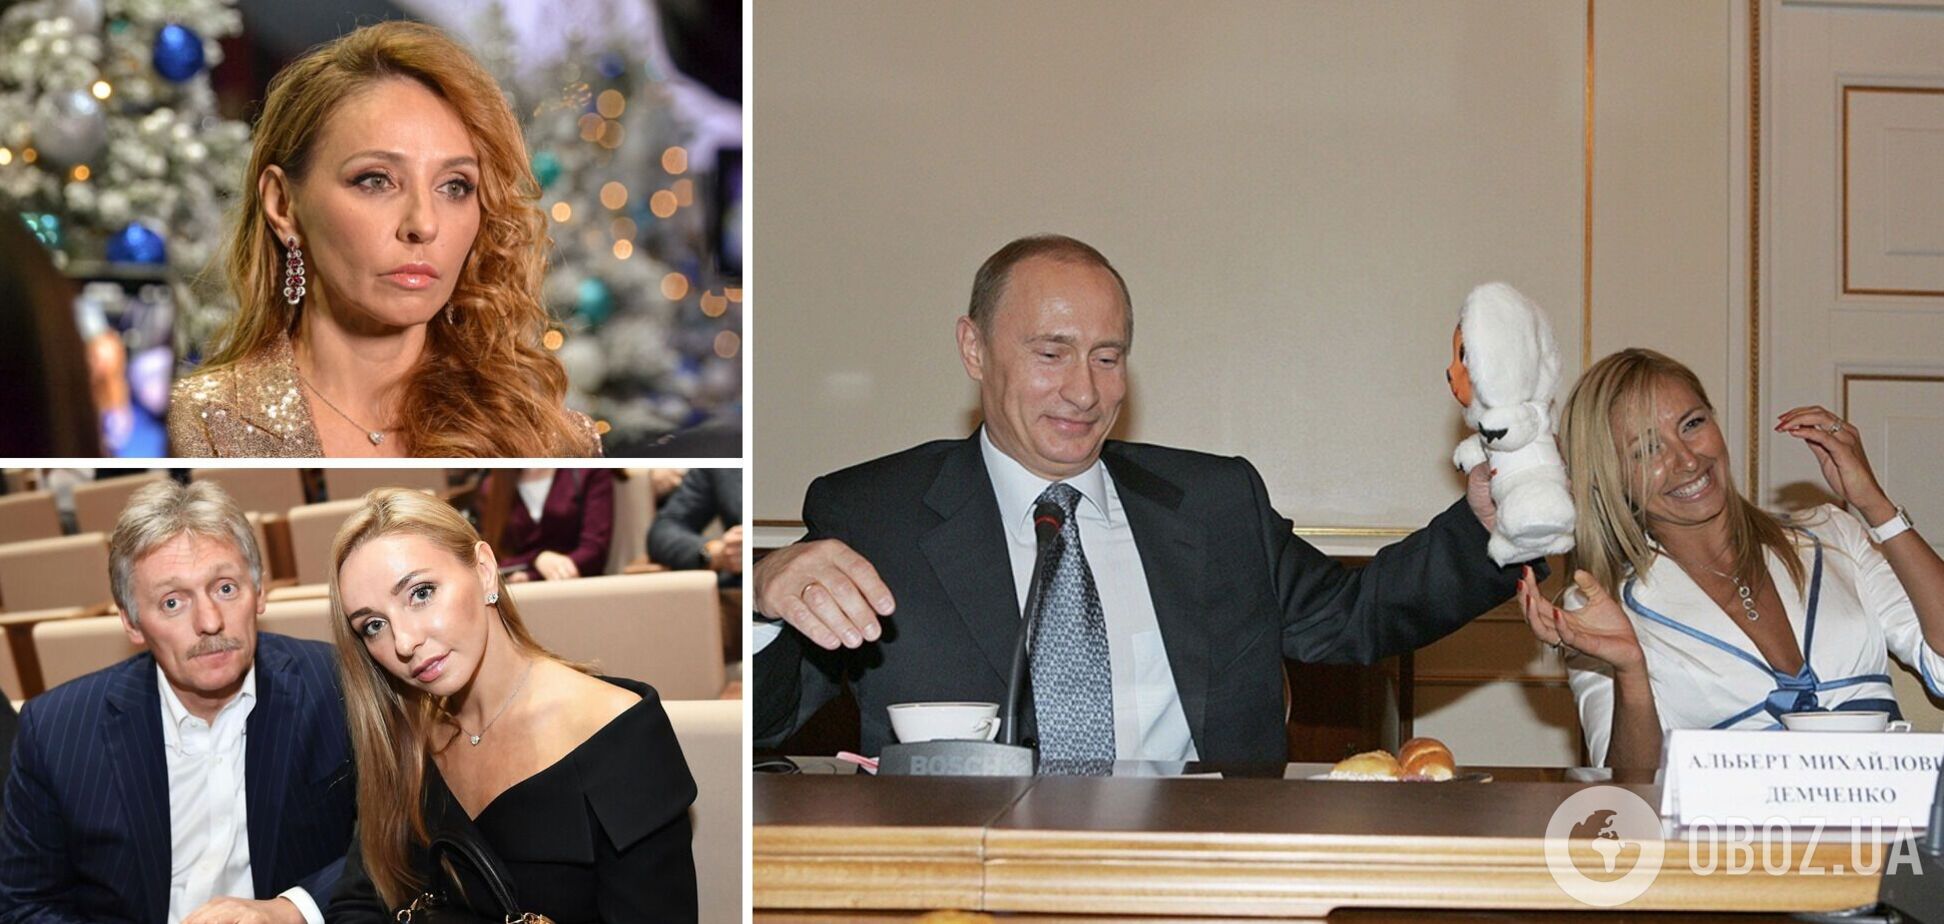 Жена Пескова устроила перед Путиным 'лизоблюдство и мракобесие в одном флаконе', получив ответку в сети 